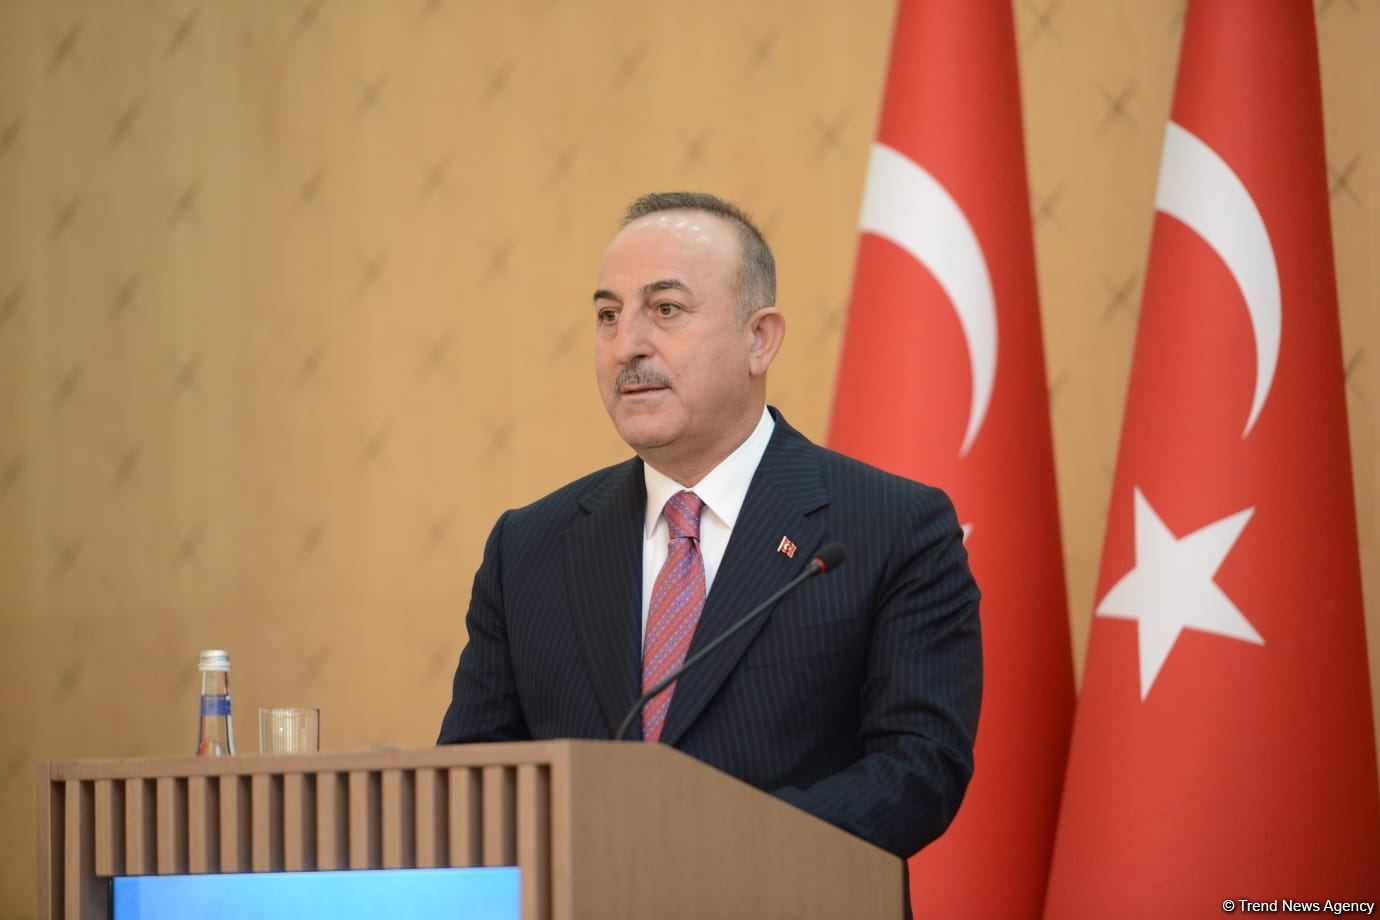 Azərbaycan torpaqlarını azad edərək türk dünyasının gücünü göstərdi - Çavuşoğlu